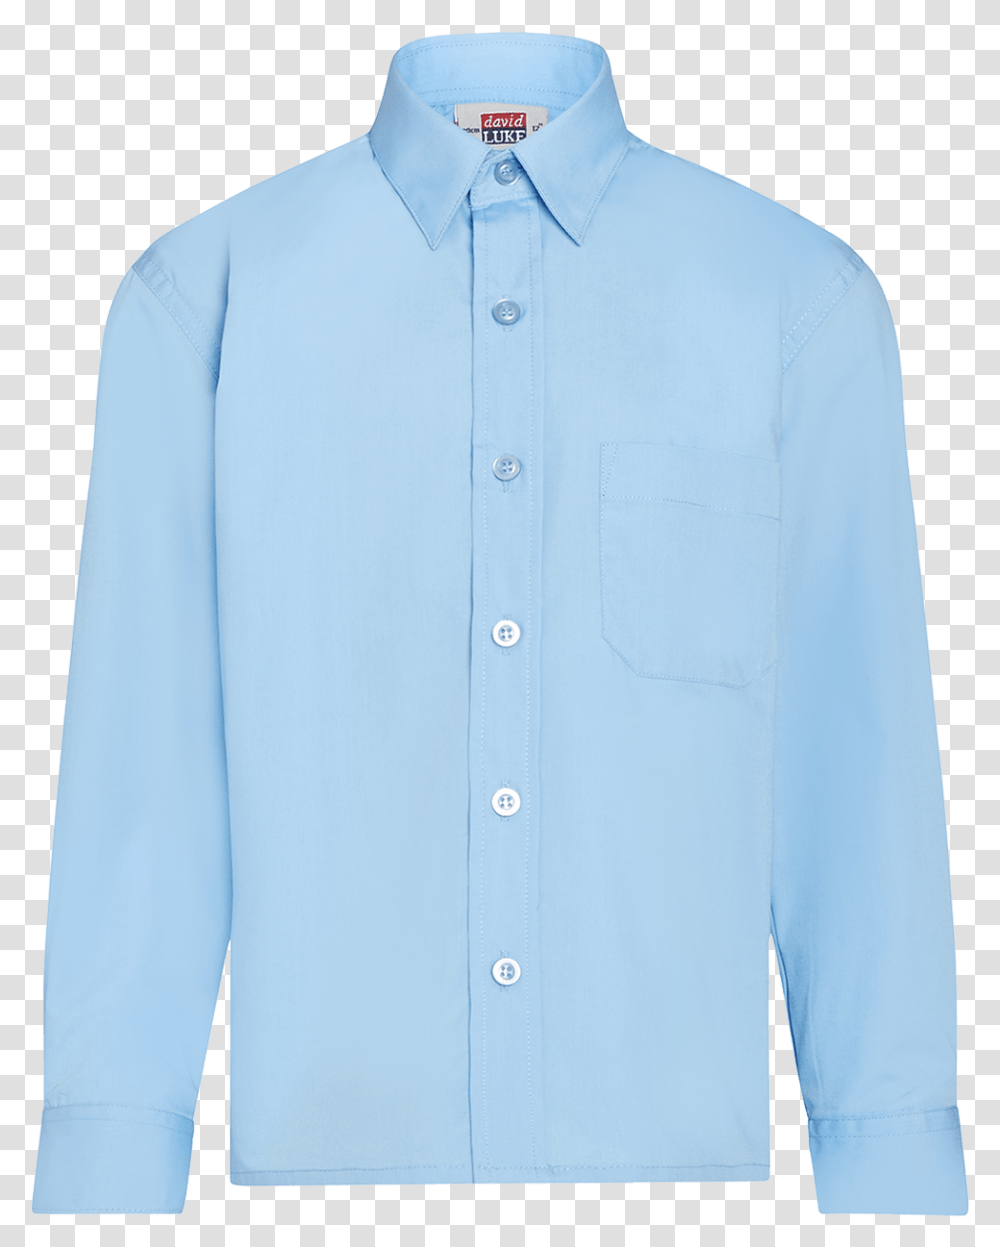 Light Blue School Shirt Ls Superstitch 86 Blue School Shirt, Clothing, Apparel, Dress Shirt, Long Sleeve Transparent Png